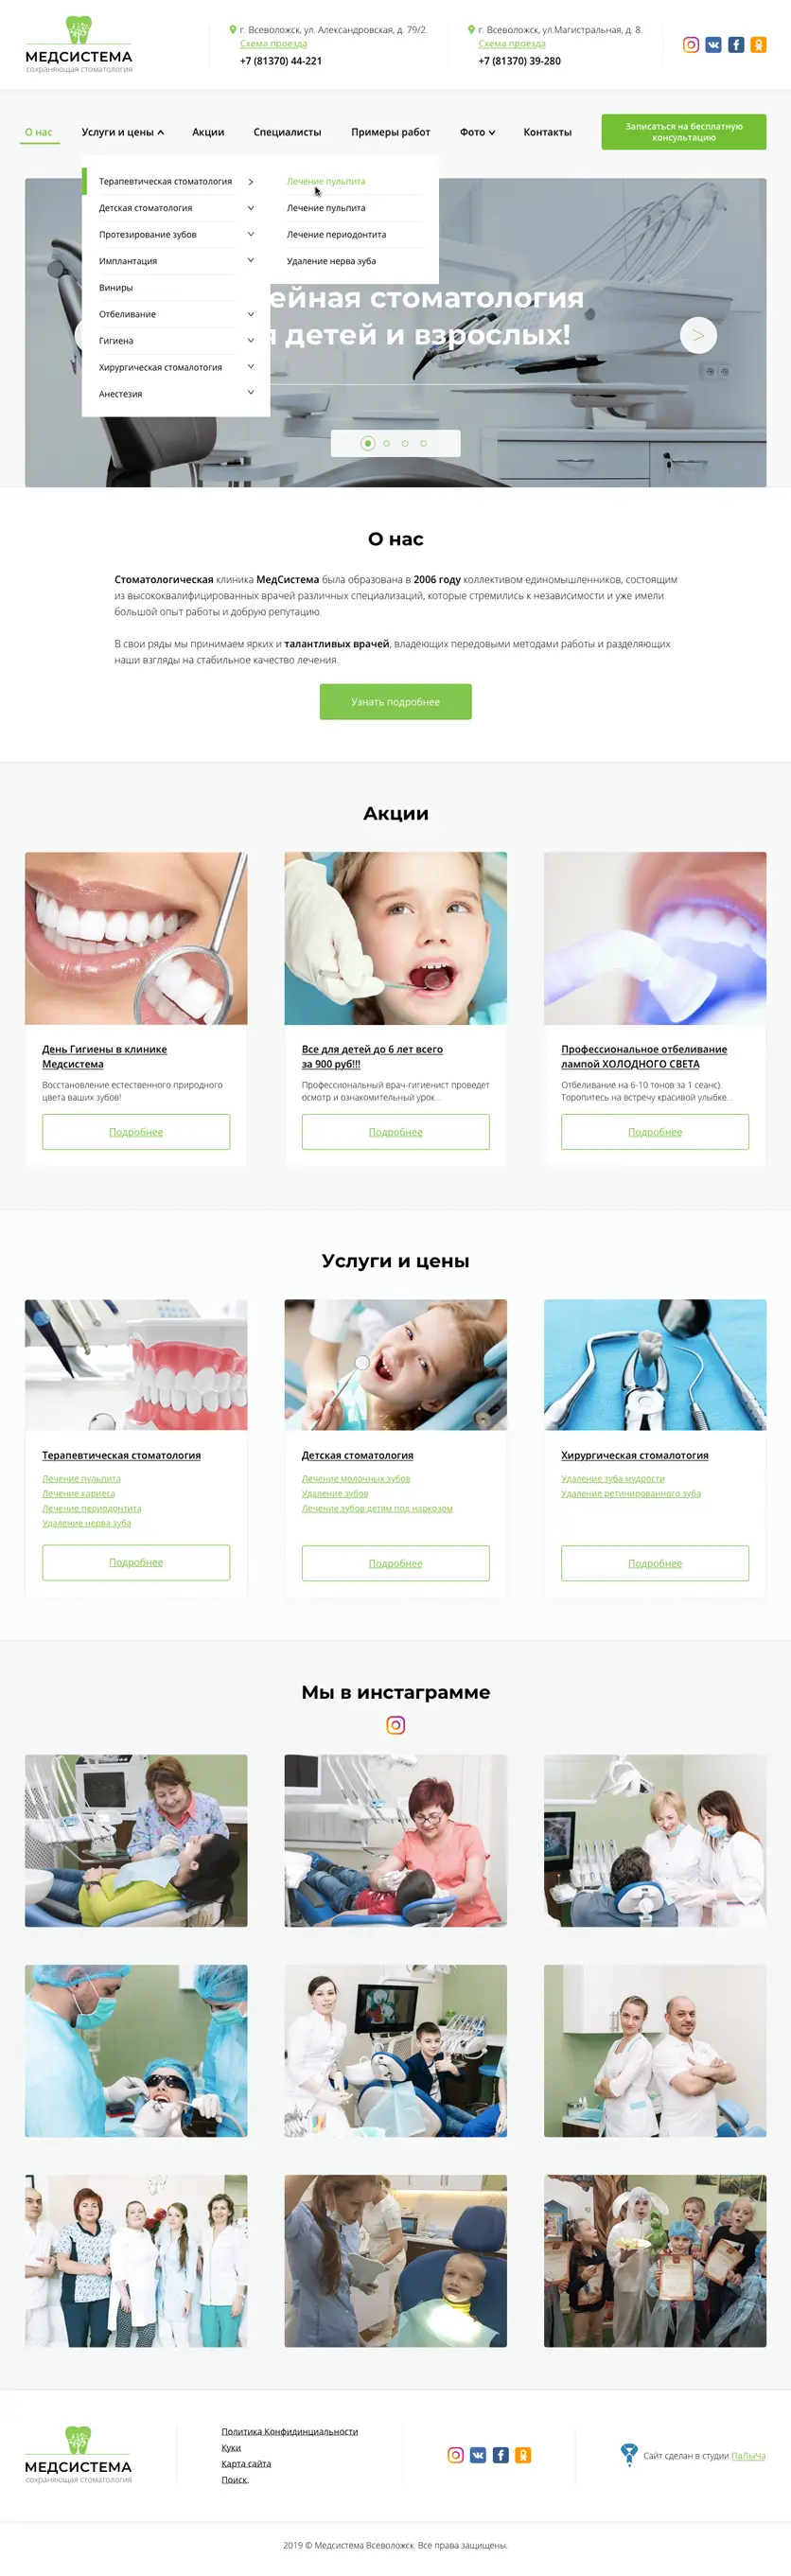 Макет главной страницы сайта стоматологии МедСистема